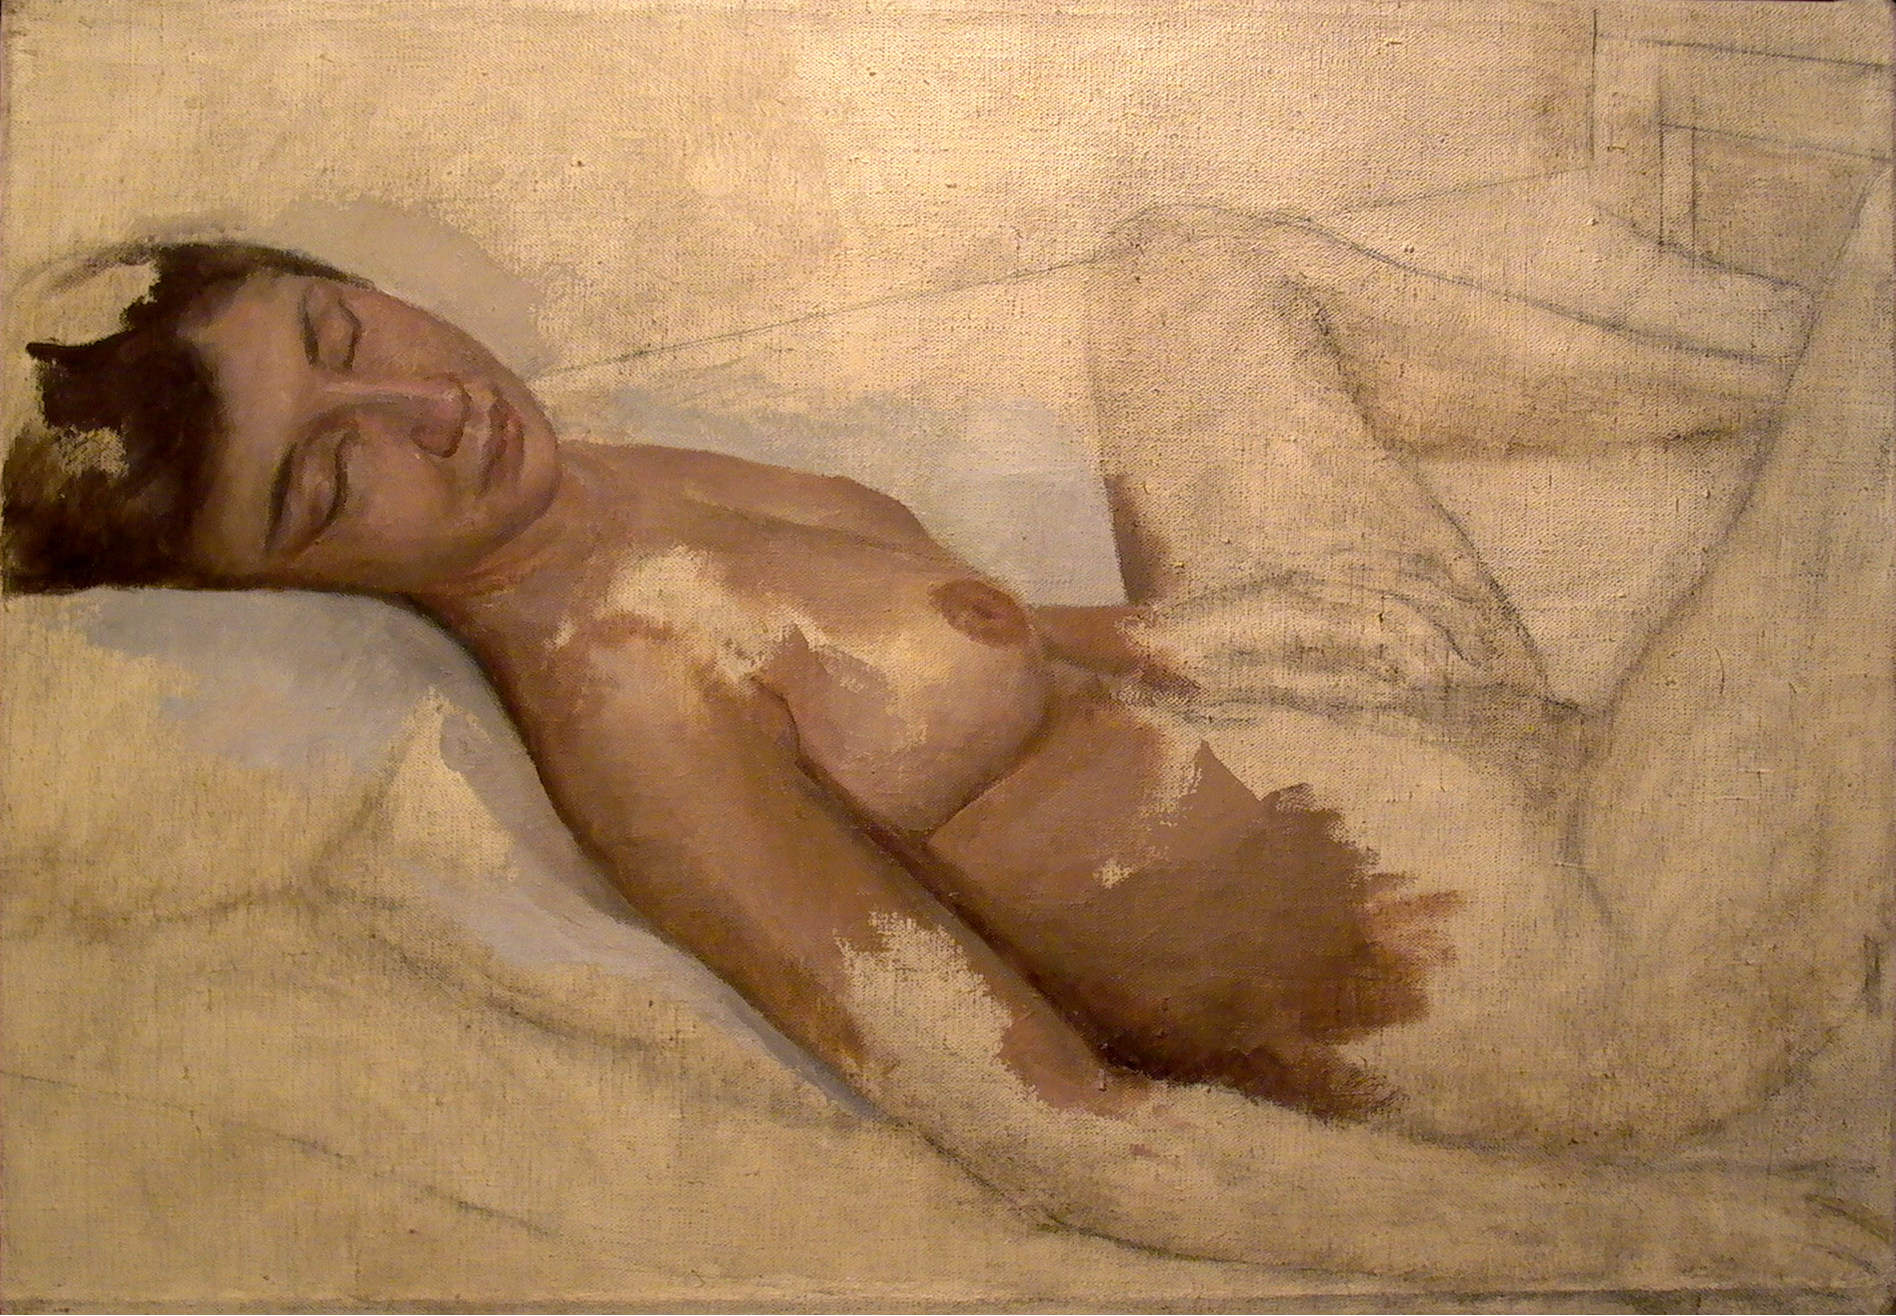 Nude Study, 22" x 30", oil on linen, 1984.